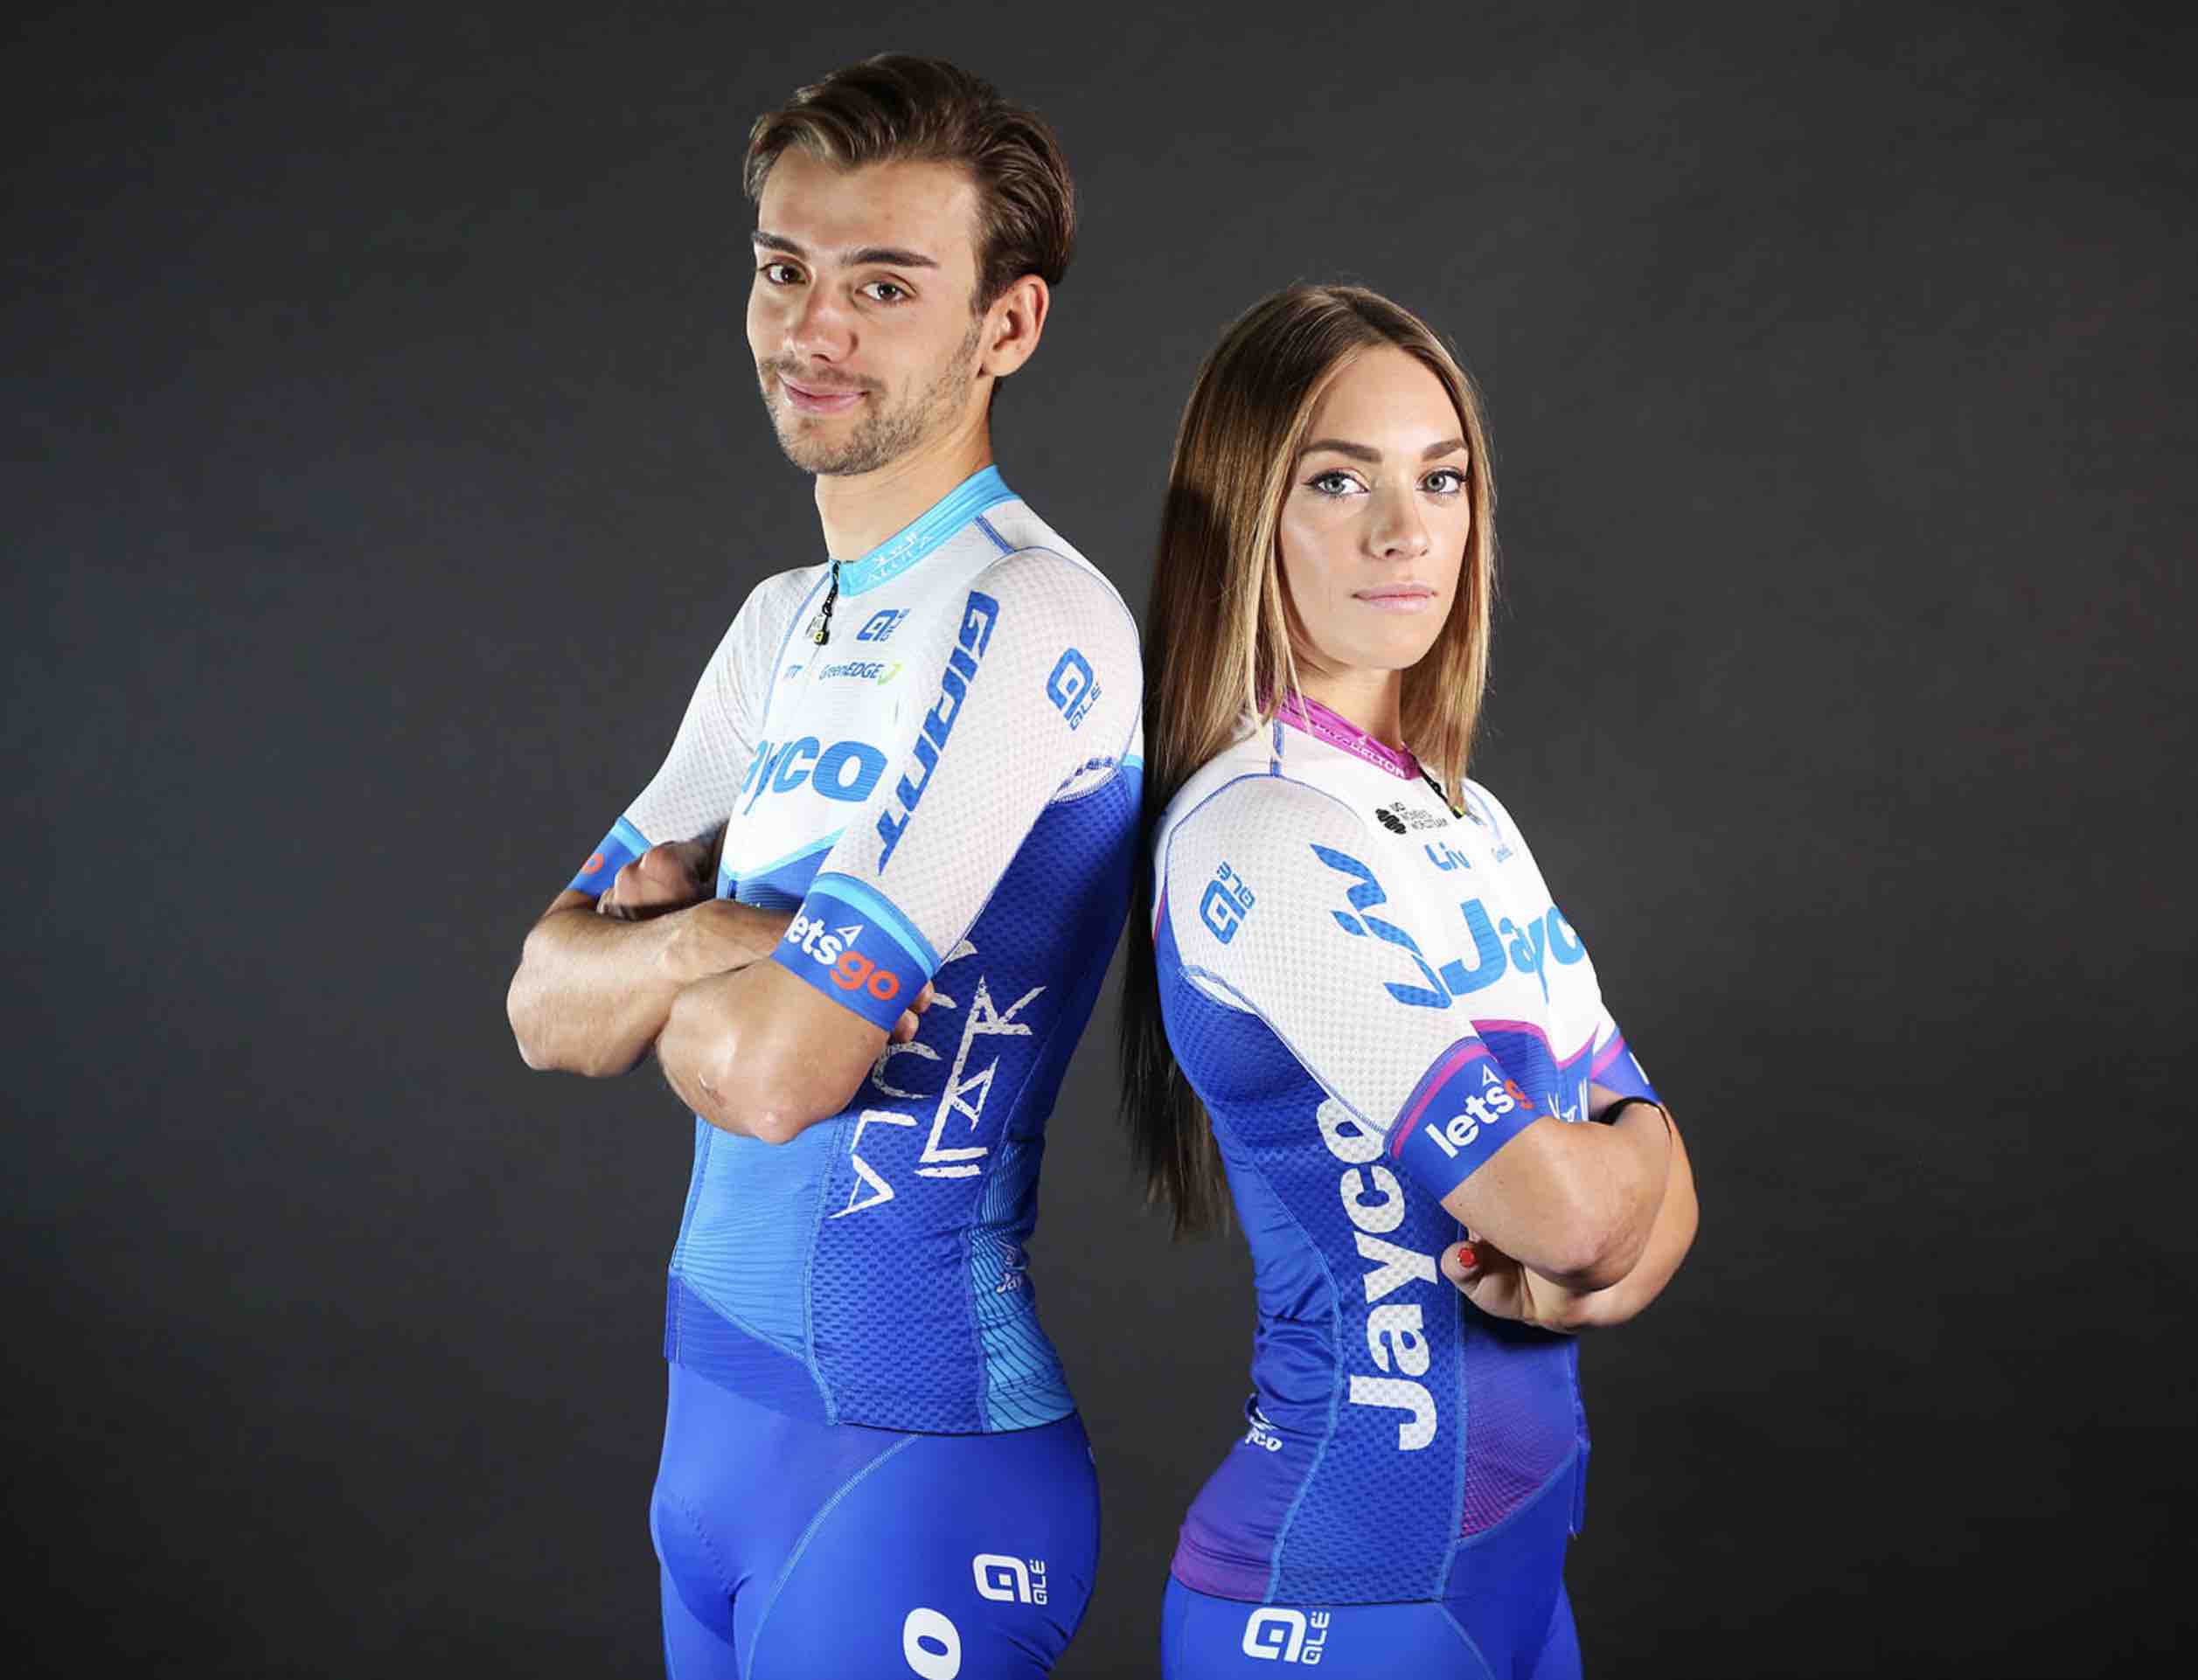 team-jayco-alula-devoile-son-maillot-pour-la-saison-2023.jpg